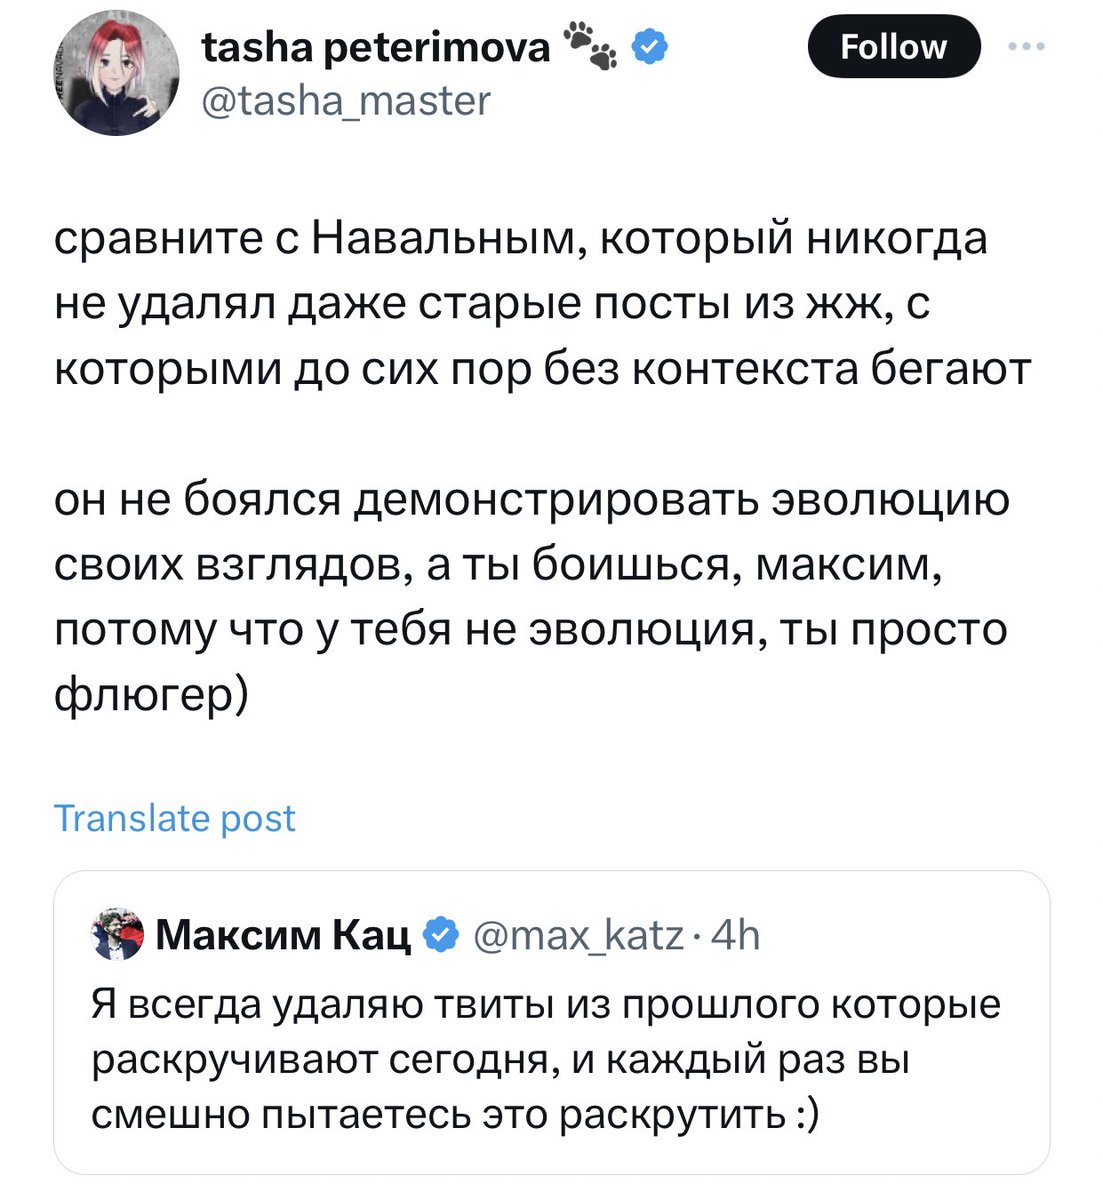 Эволюция взглядов Навального со времен ЖЖ. Посмотрите что Светов писал 20 лет назад. Смотри не перепутай